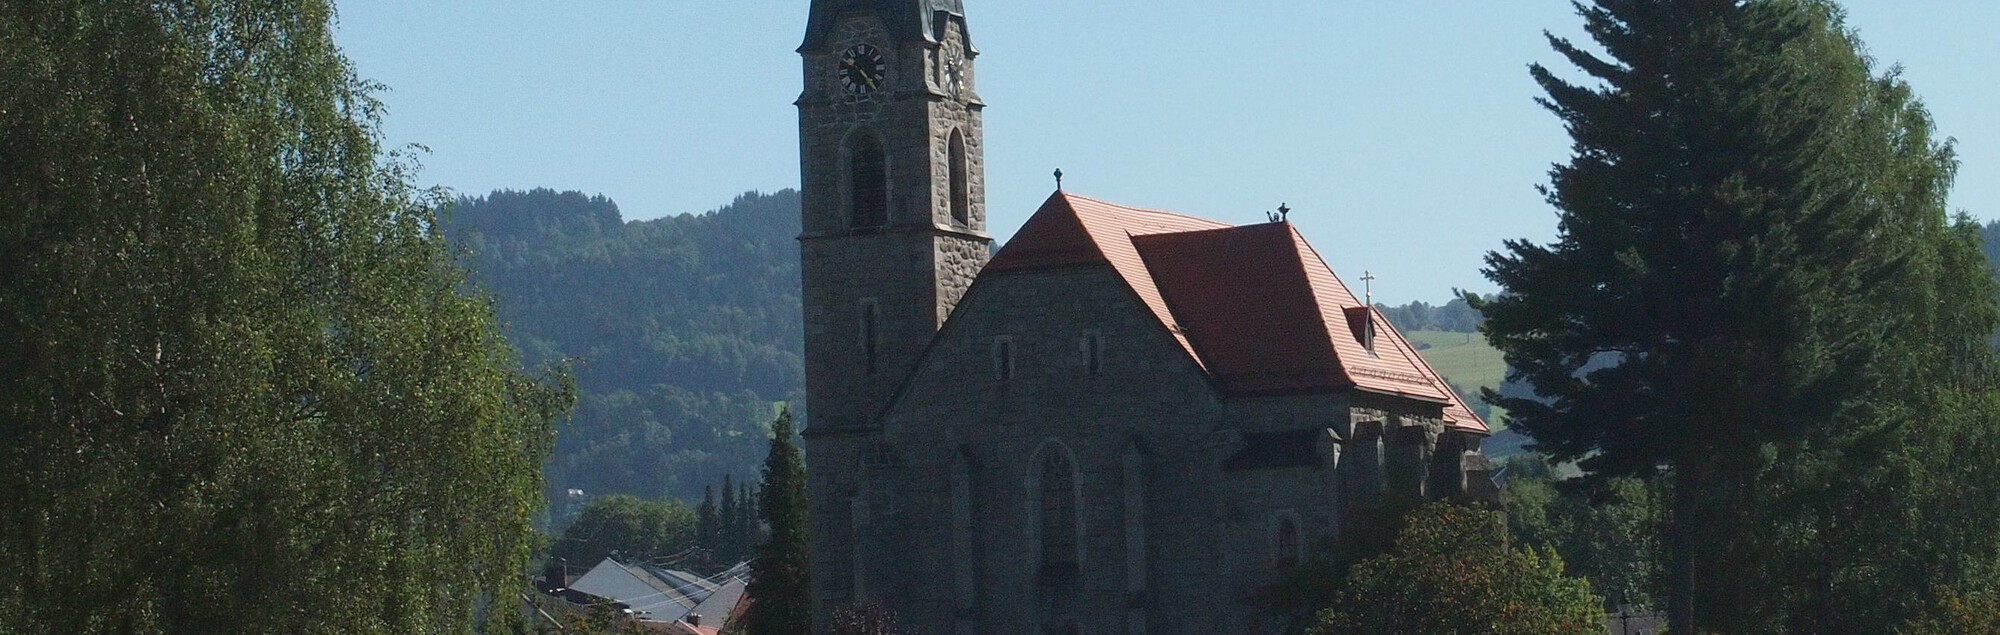           Pfarrgemeinde St. Oswald bei Freistadt                                                                                                           